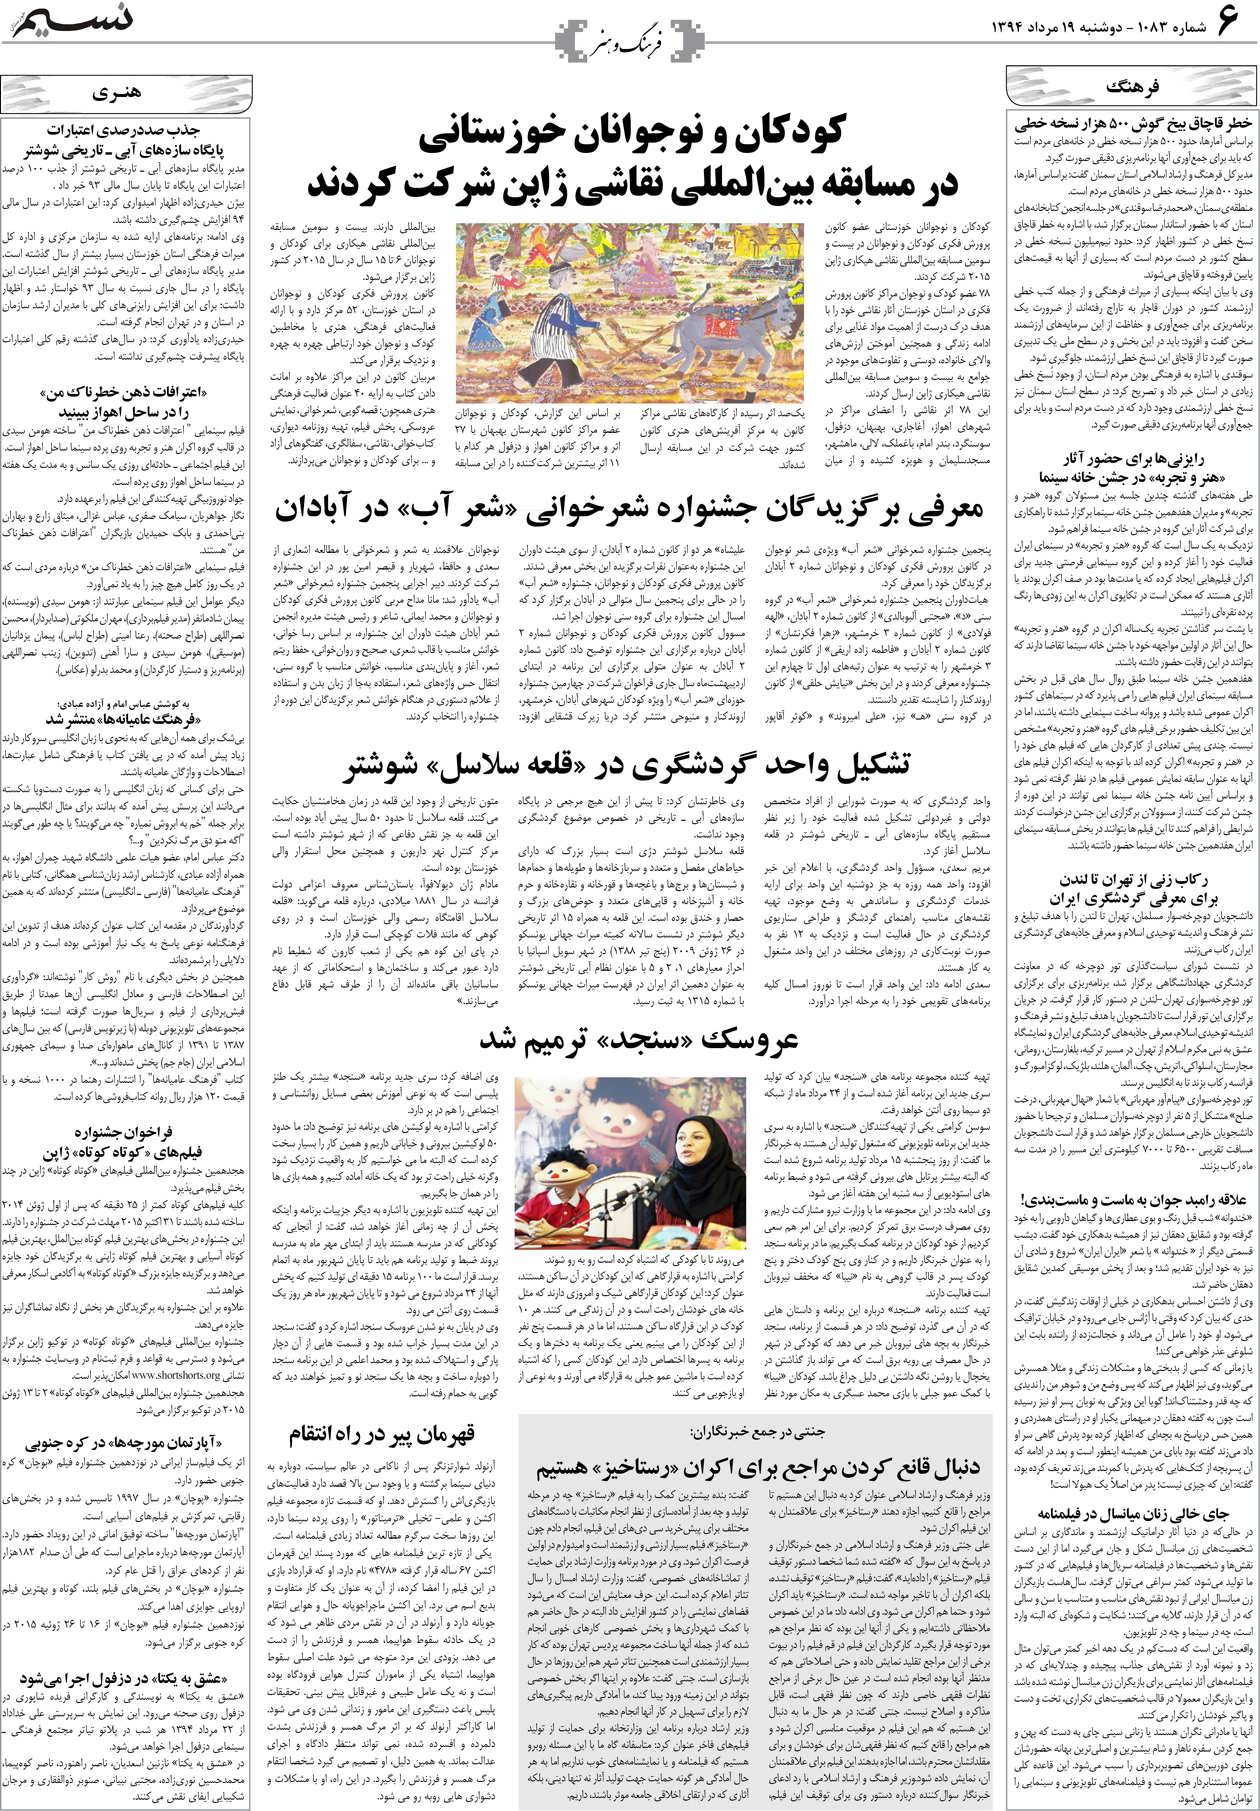 صفحه فرهنگ و هنر روزنامه نسیم شماره 1083